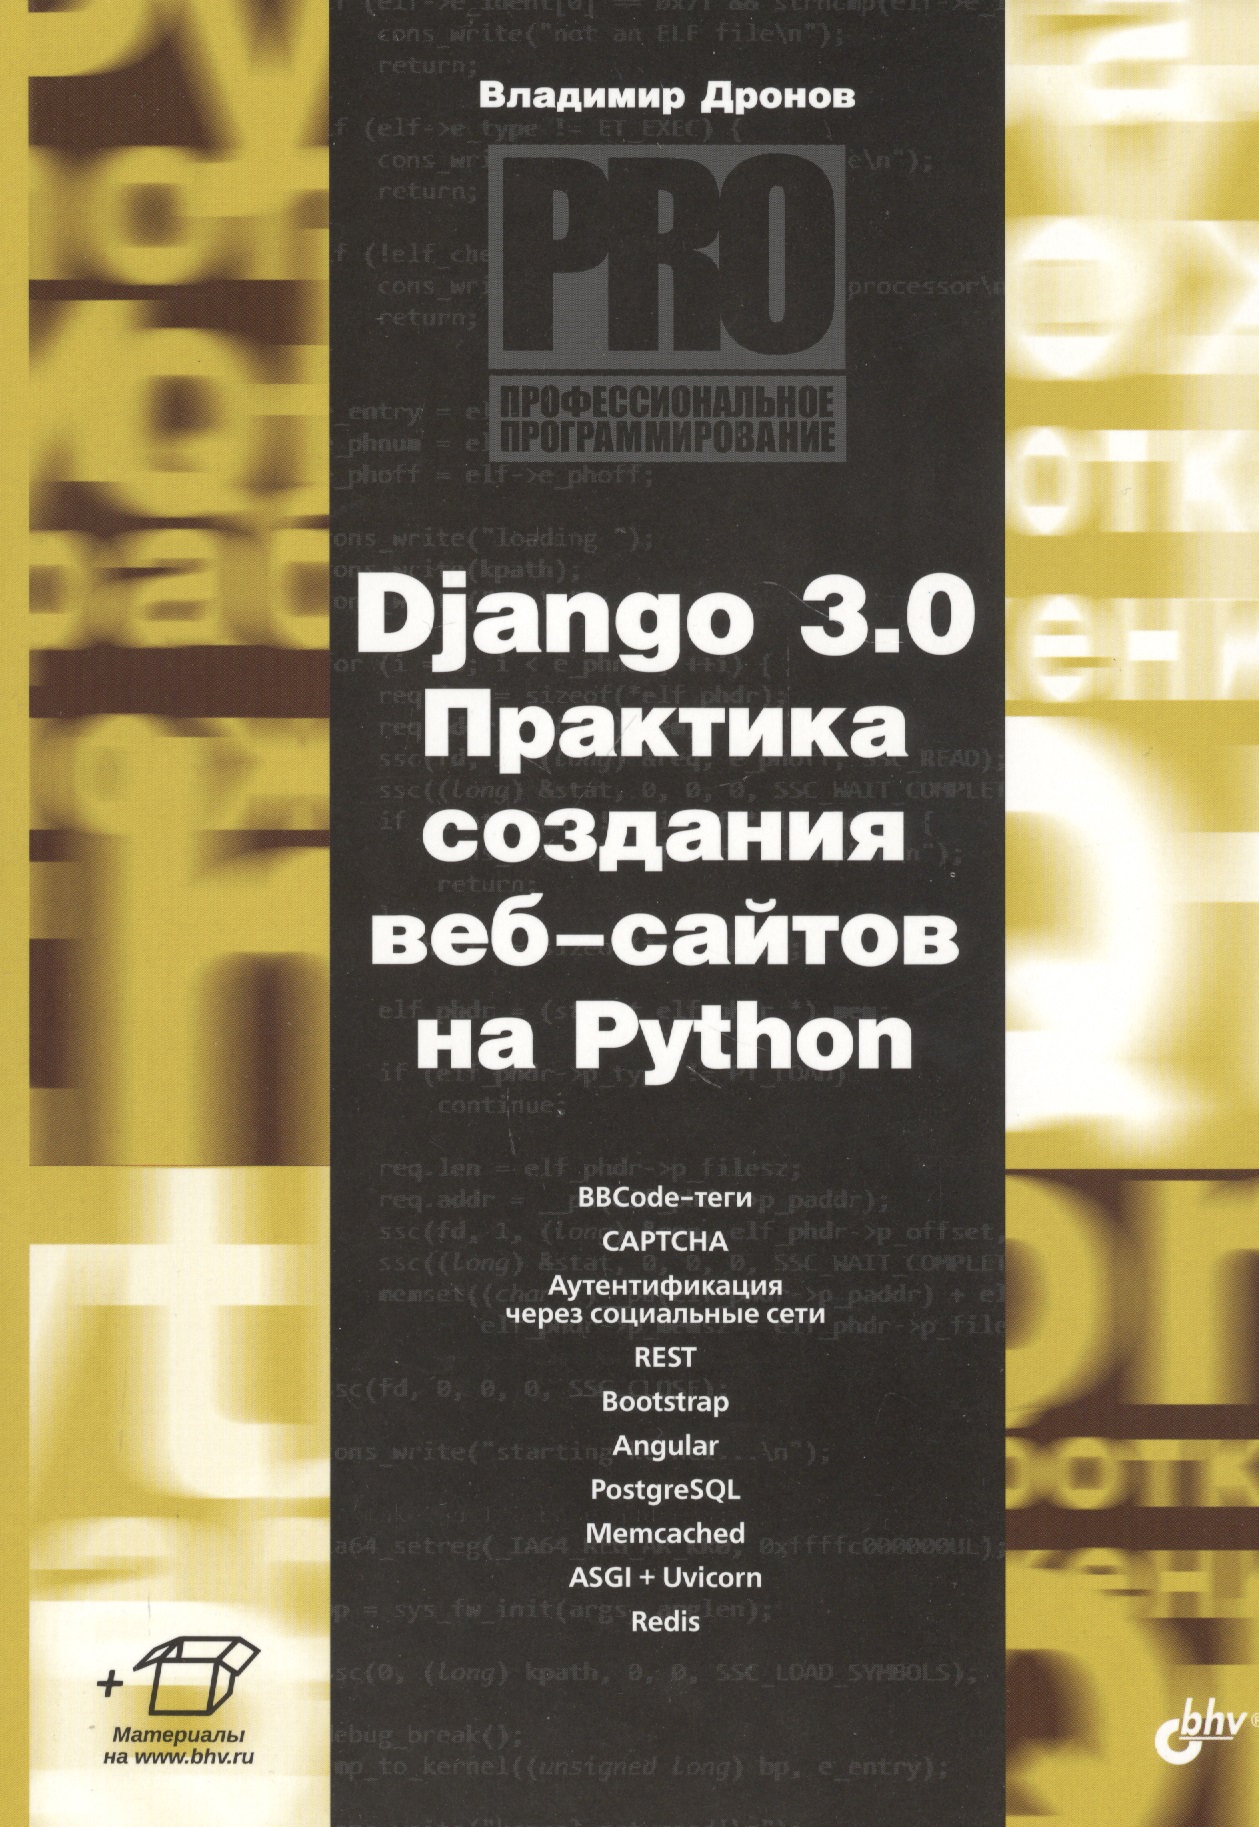 Дронов Владимир Александрович Django 3.0. Практика создания веб-сайтов на Python митчелл р современный скрапинг веб сайтов с помощью python 2 е межд издание